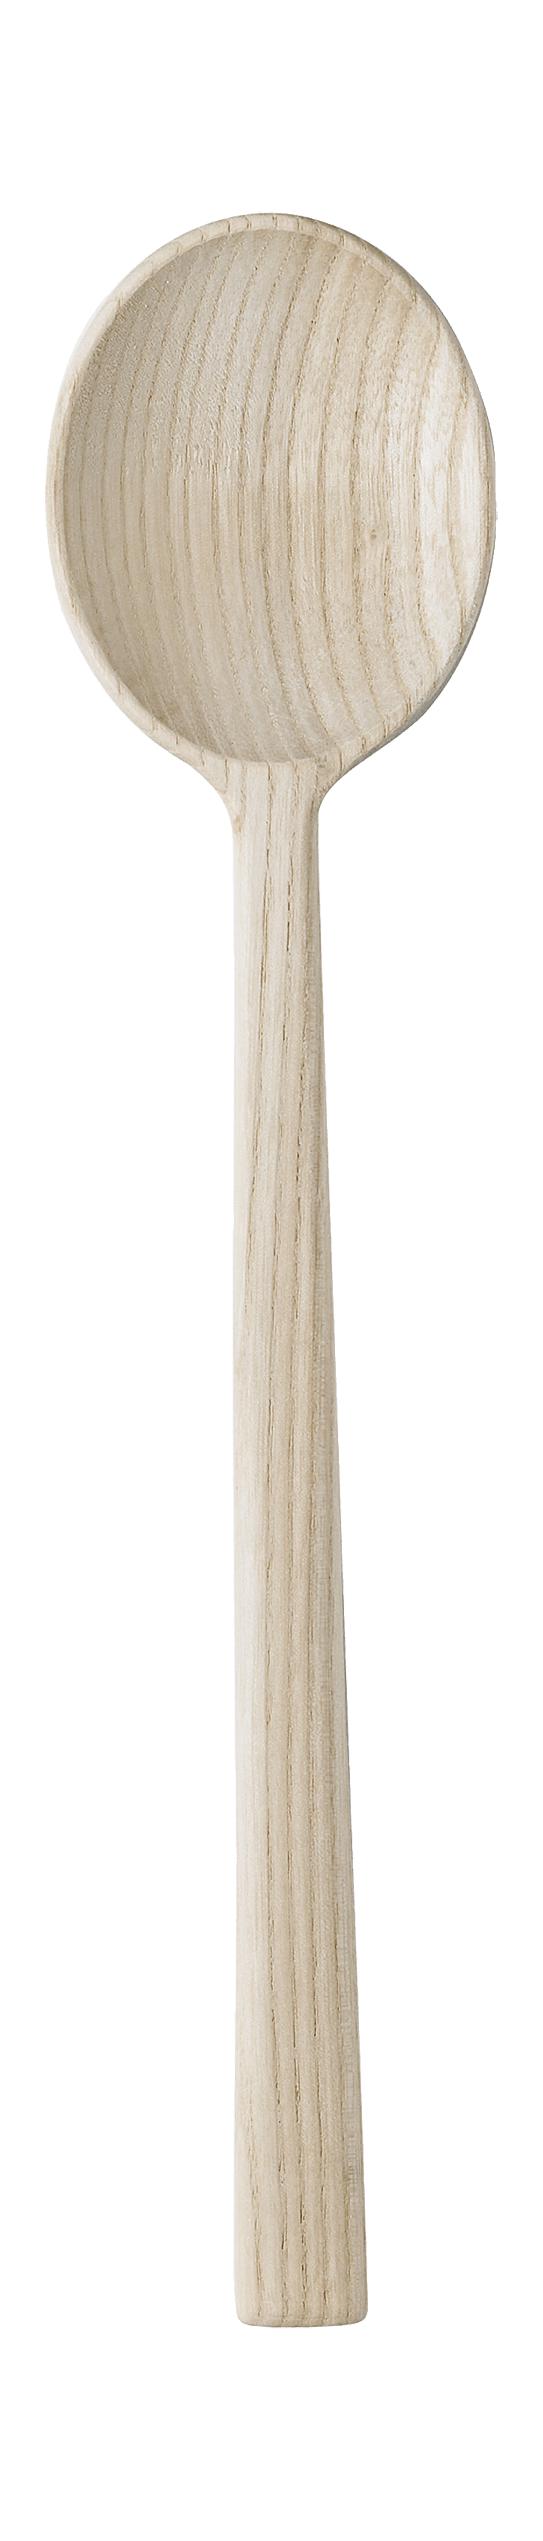 Rig tig woody hrærandi skeið, 26,5 cm